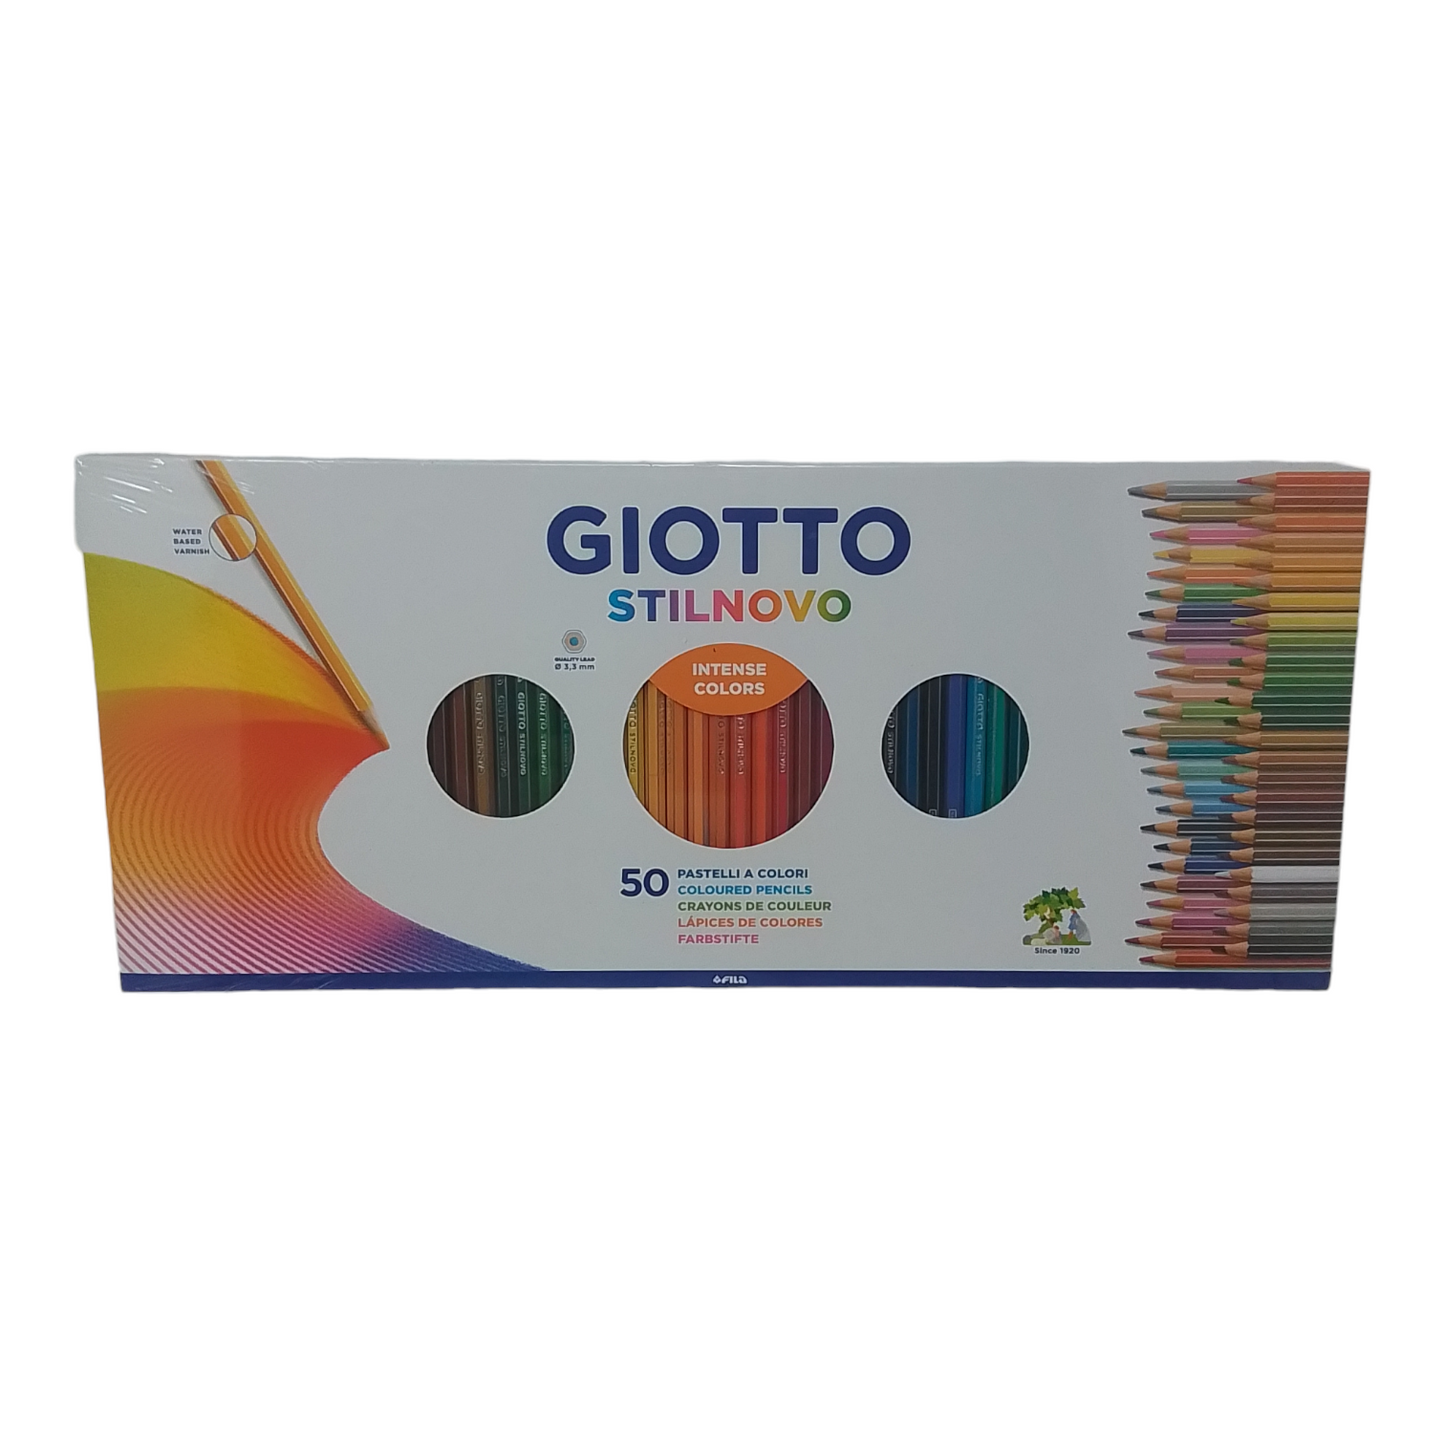 Giotto - Stilnovo